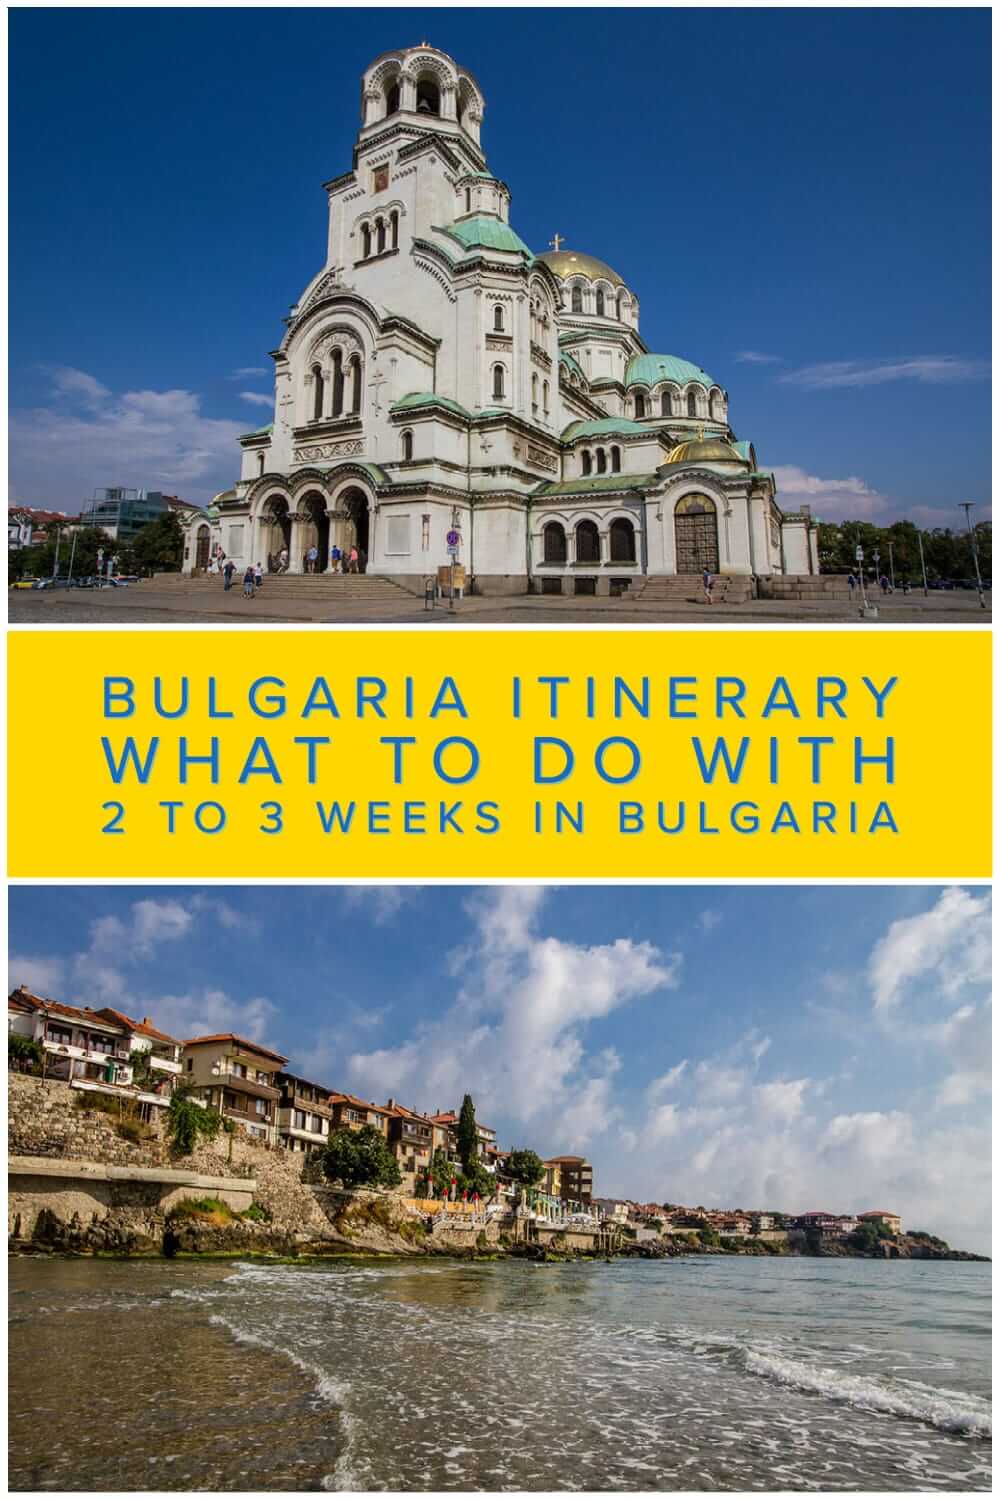 全面的保加利亚行程为背包客和独立旅行者到保加利亚。2 - 3周内在保加利亚能看到什么#旅行#背包旅行#旅行计划#巴尔干